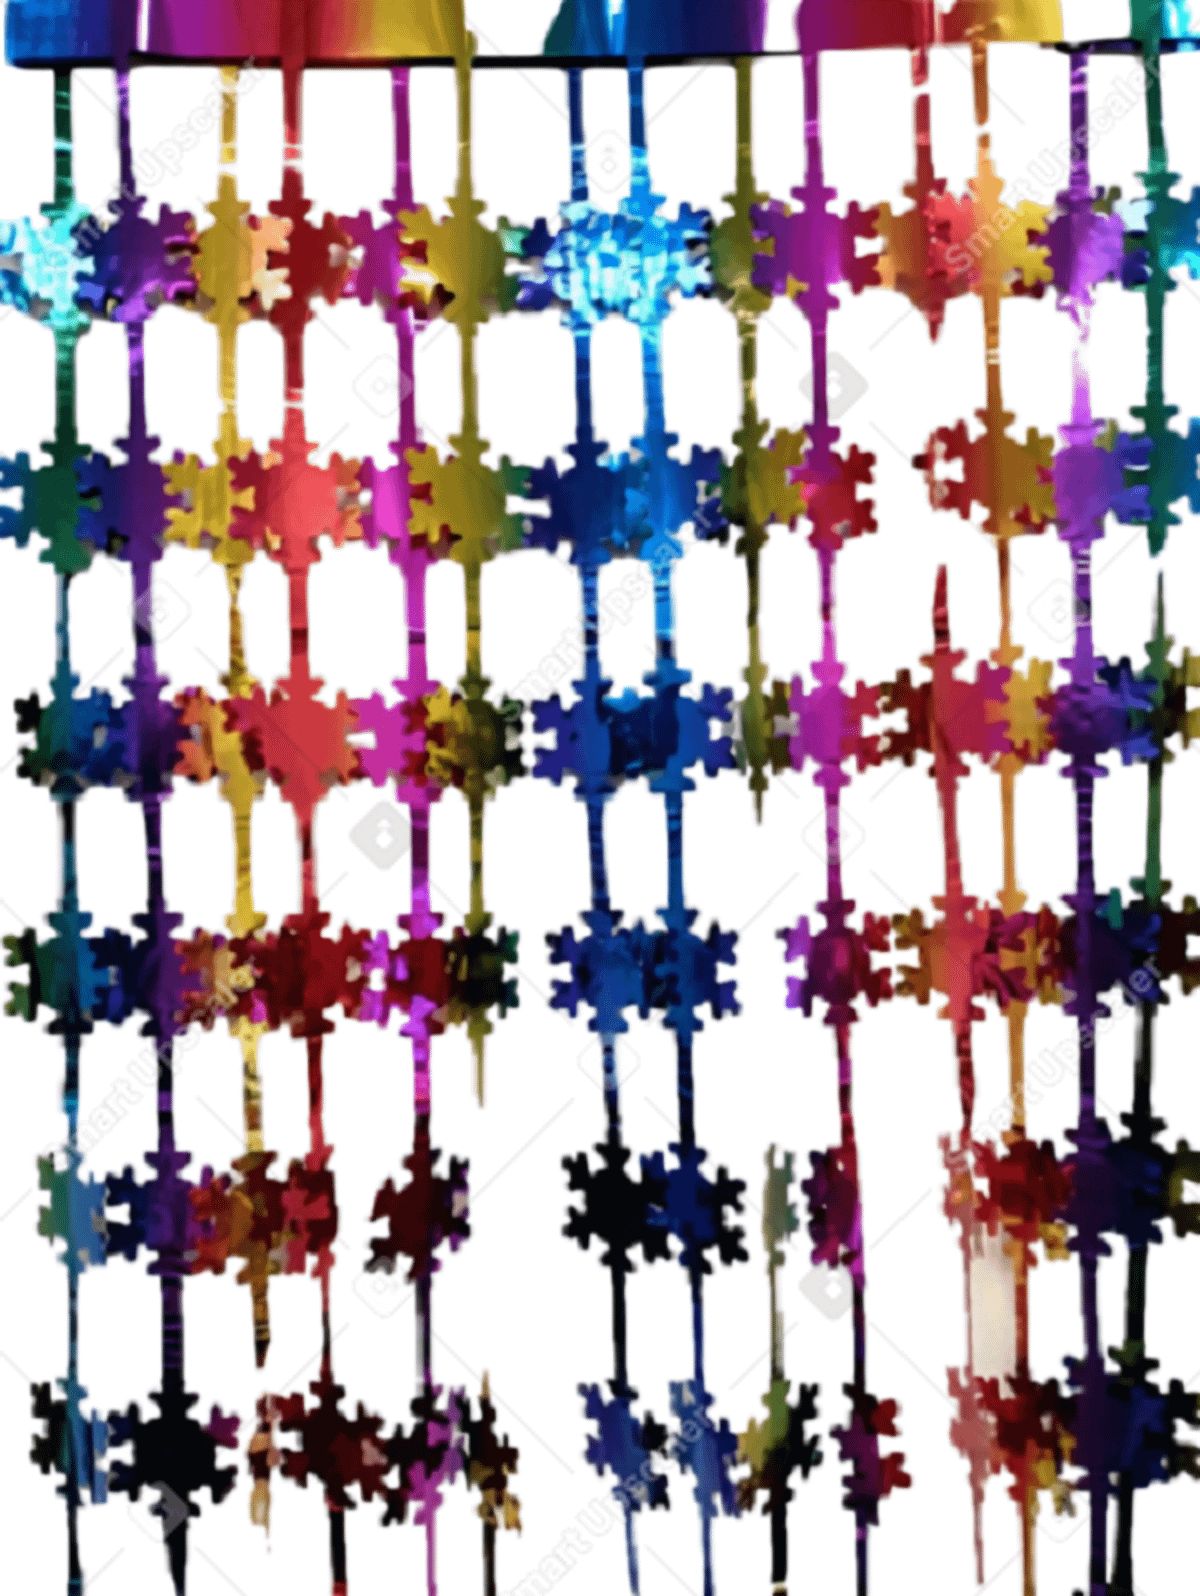 Занавес COSY фольгированный Снежинки разноцветные 100х200 см набор 2 шт